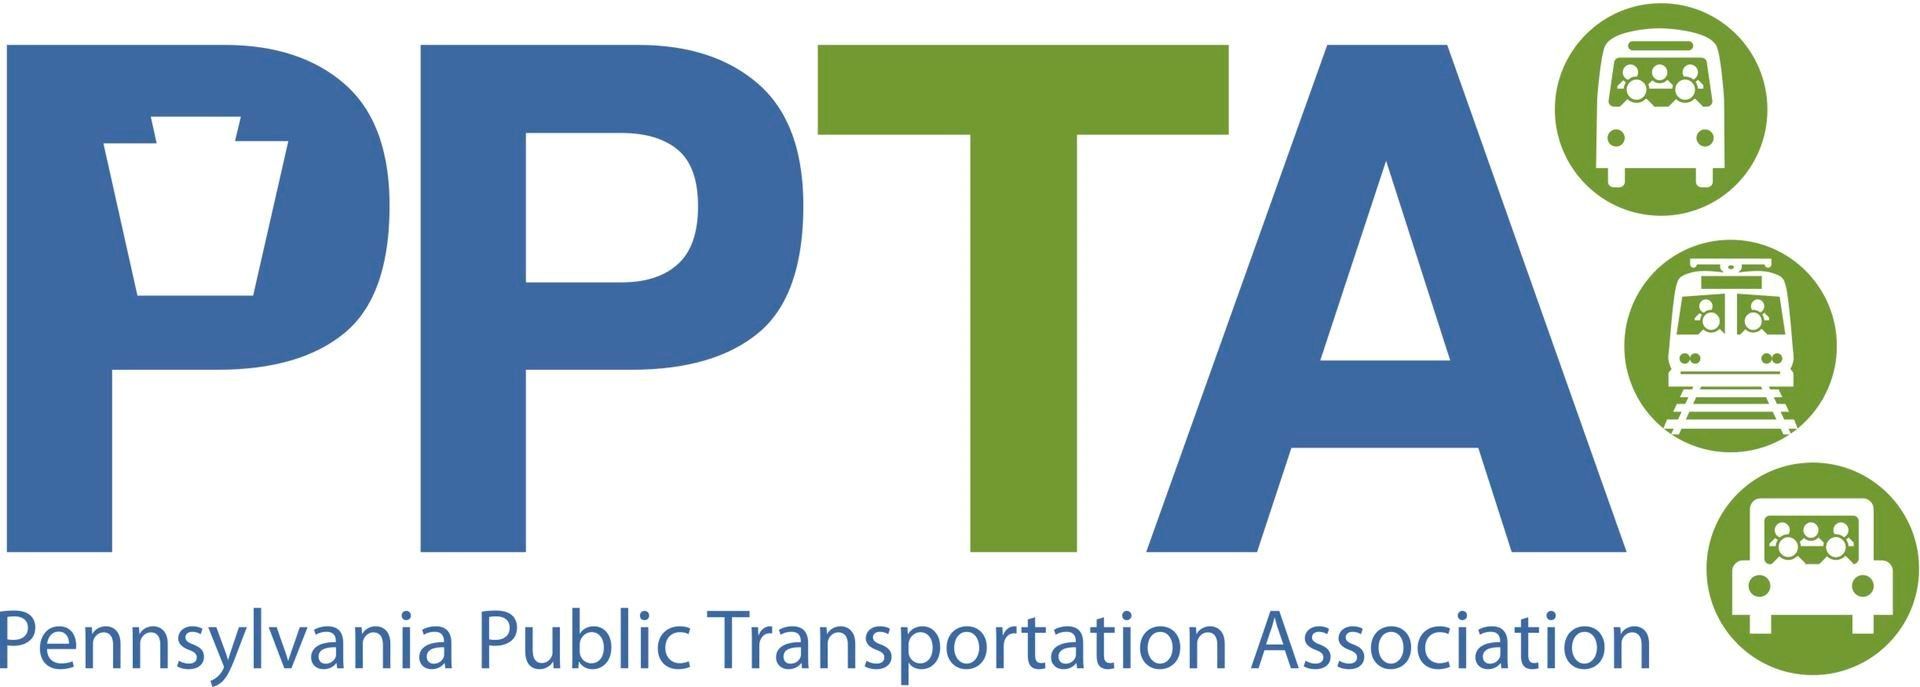 PPTA Logo